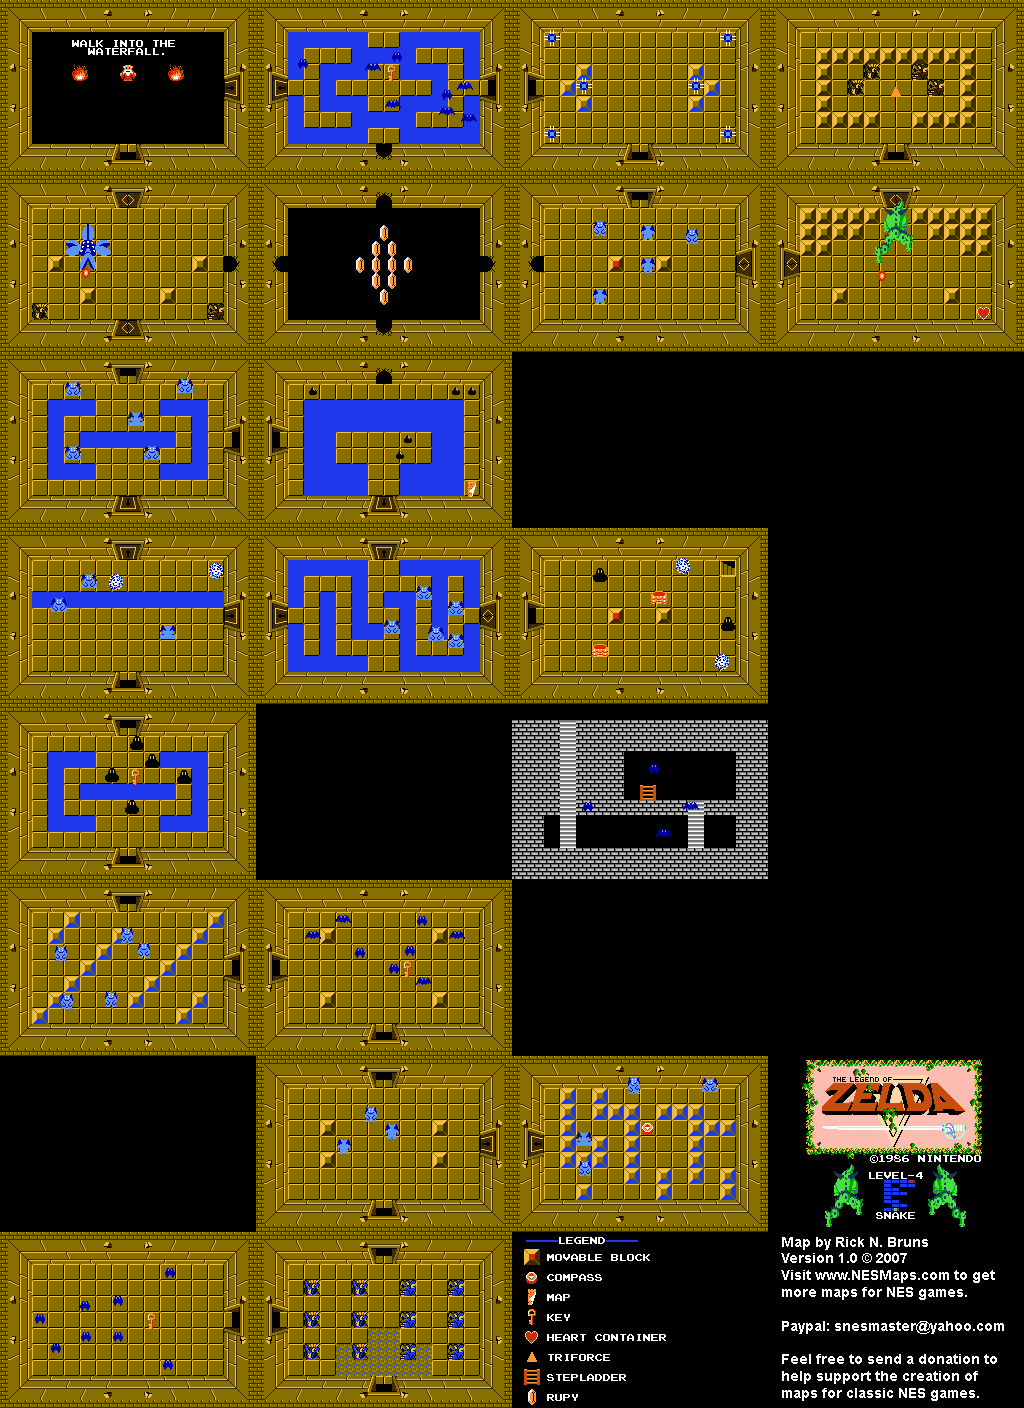 The Legend of Zelda - Level 4 Snake - NES Map